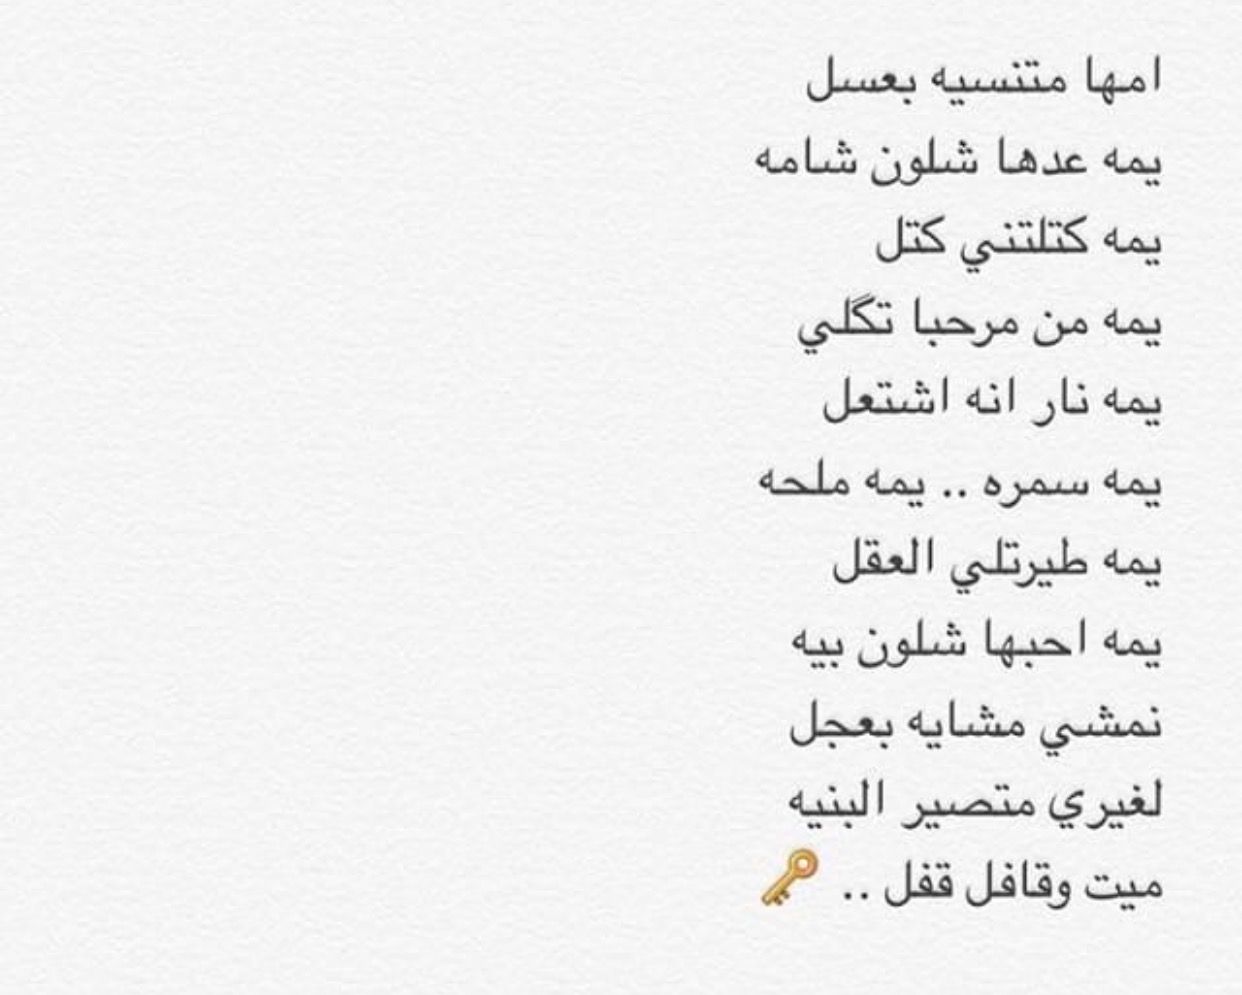 شعر عراقي شعبي , كلمات شعر مذهله باللهجه العراقيه رمزيات